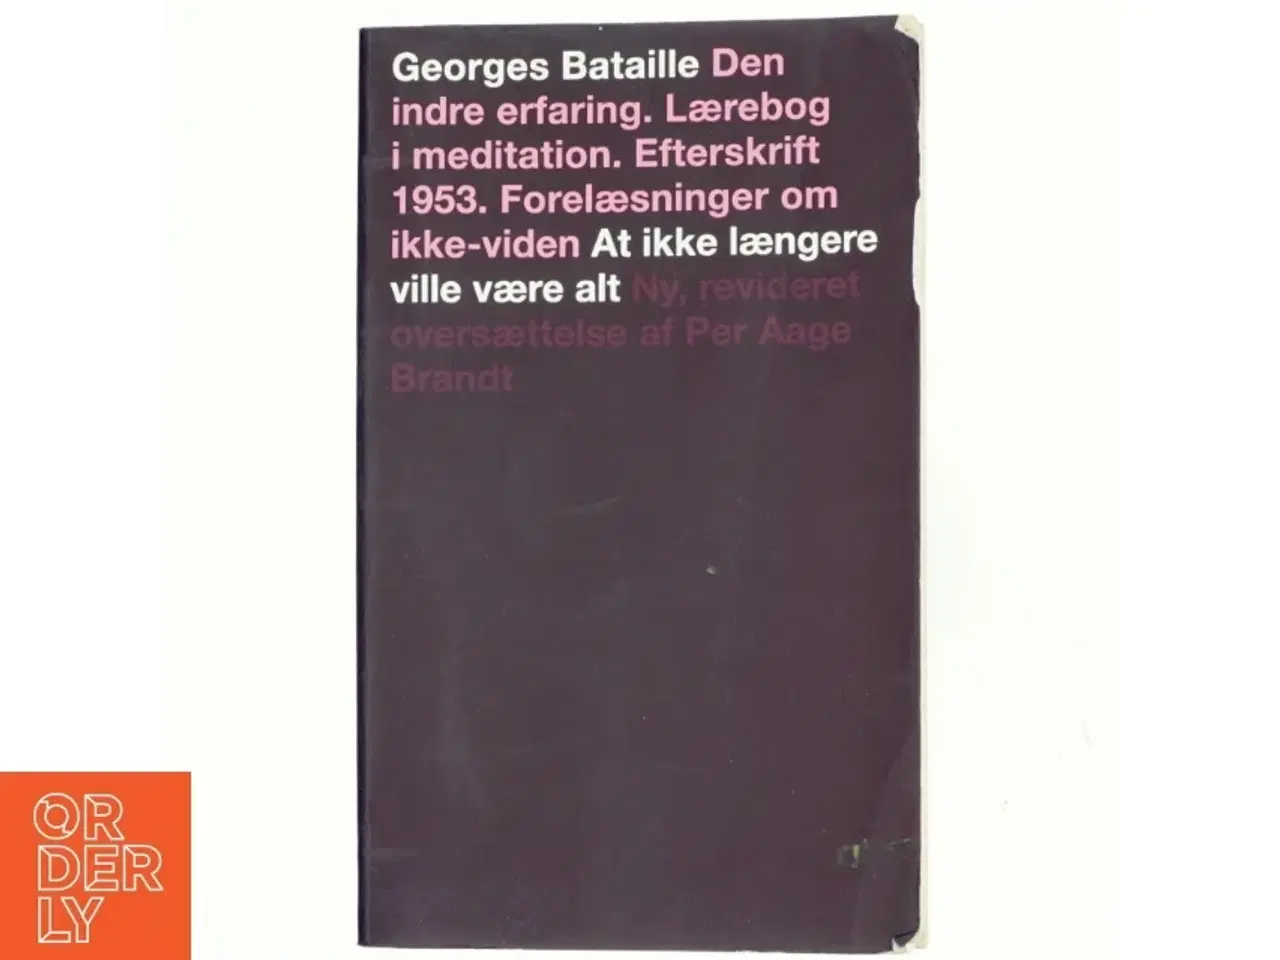 Billede 1 - Den indre erfaring af Georges Bataille (bog)